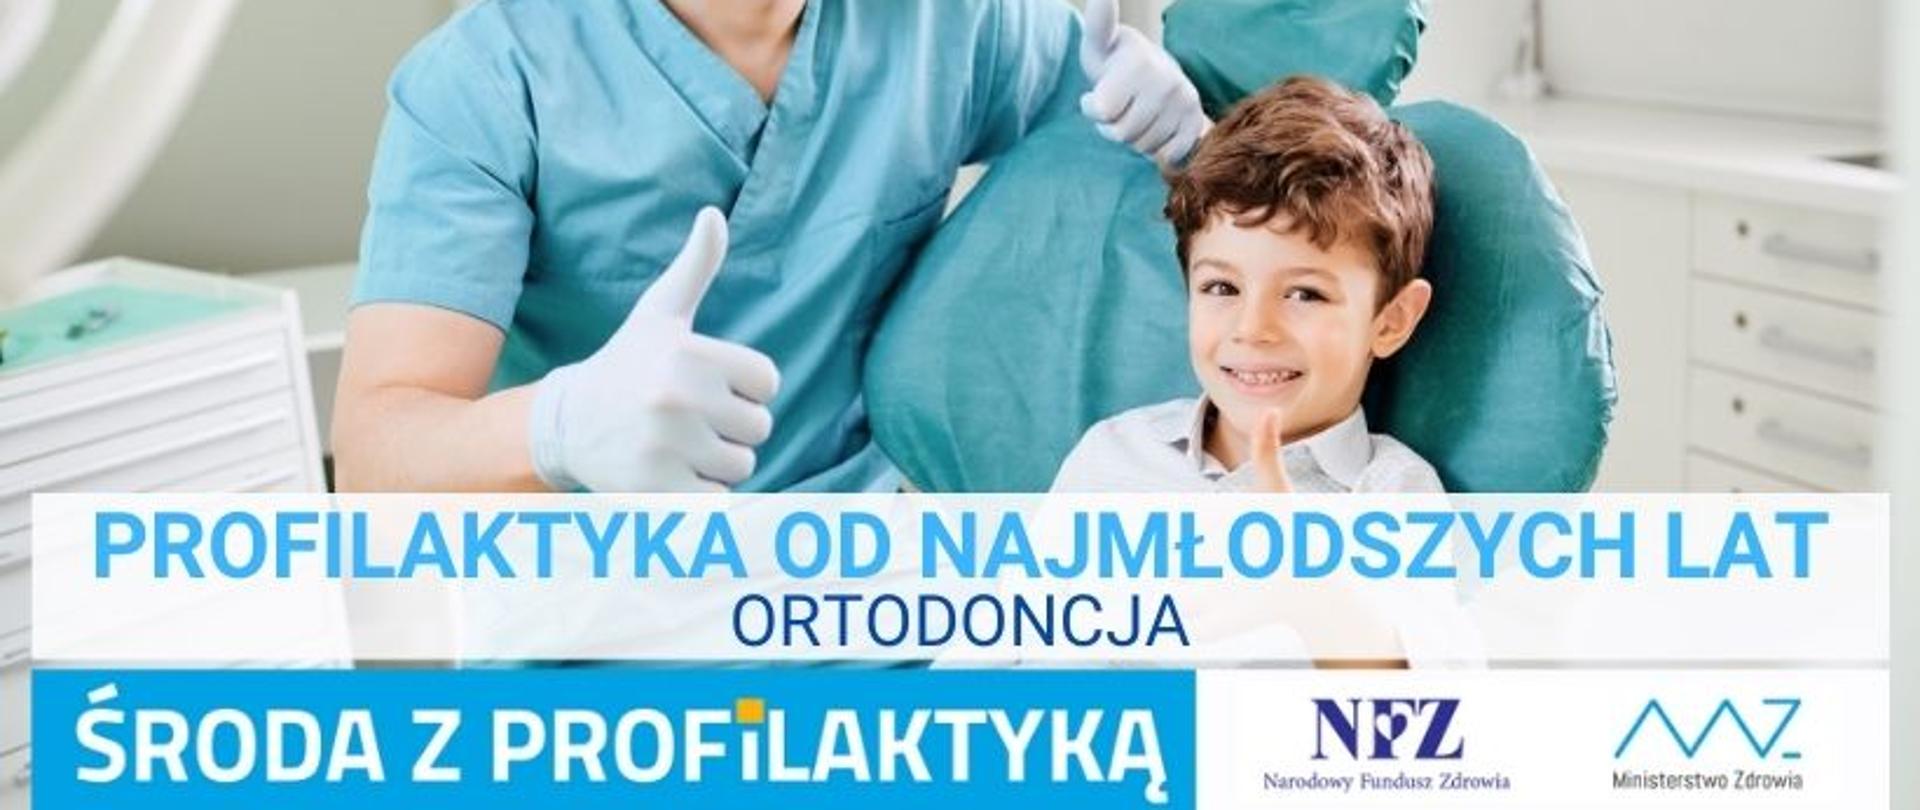 Profilaktyka od najmłodszych lat. Ortodoncja. 